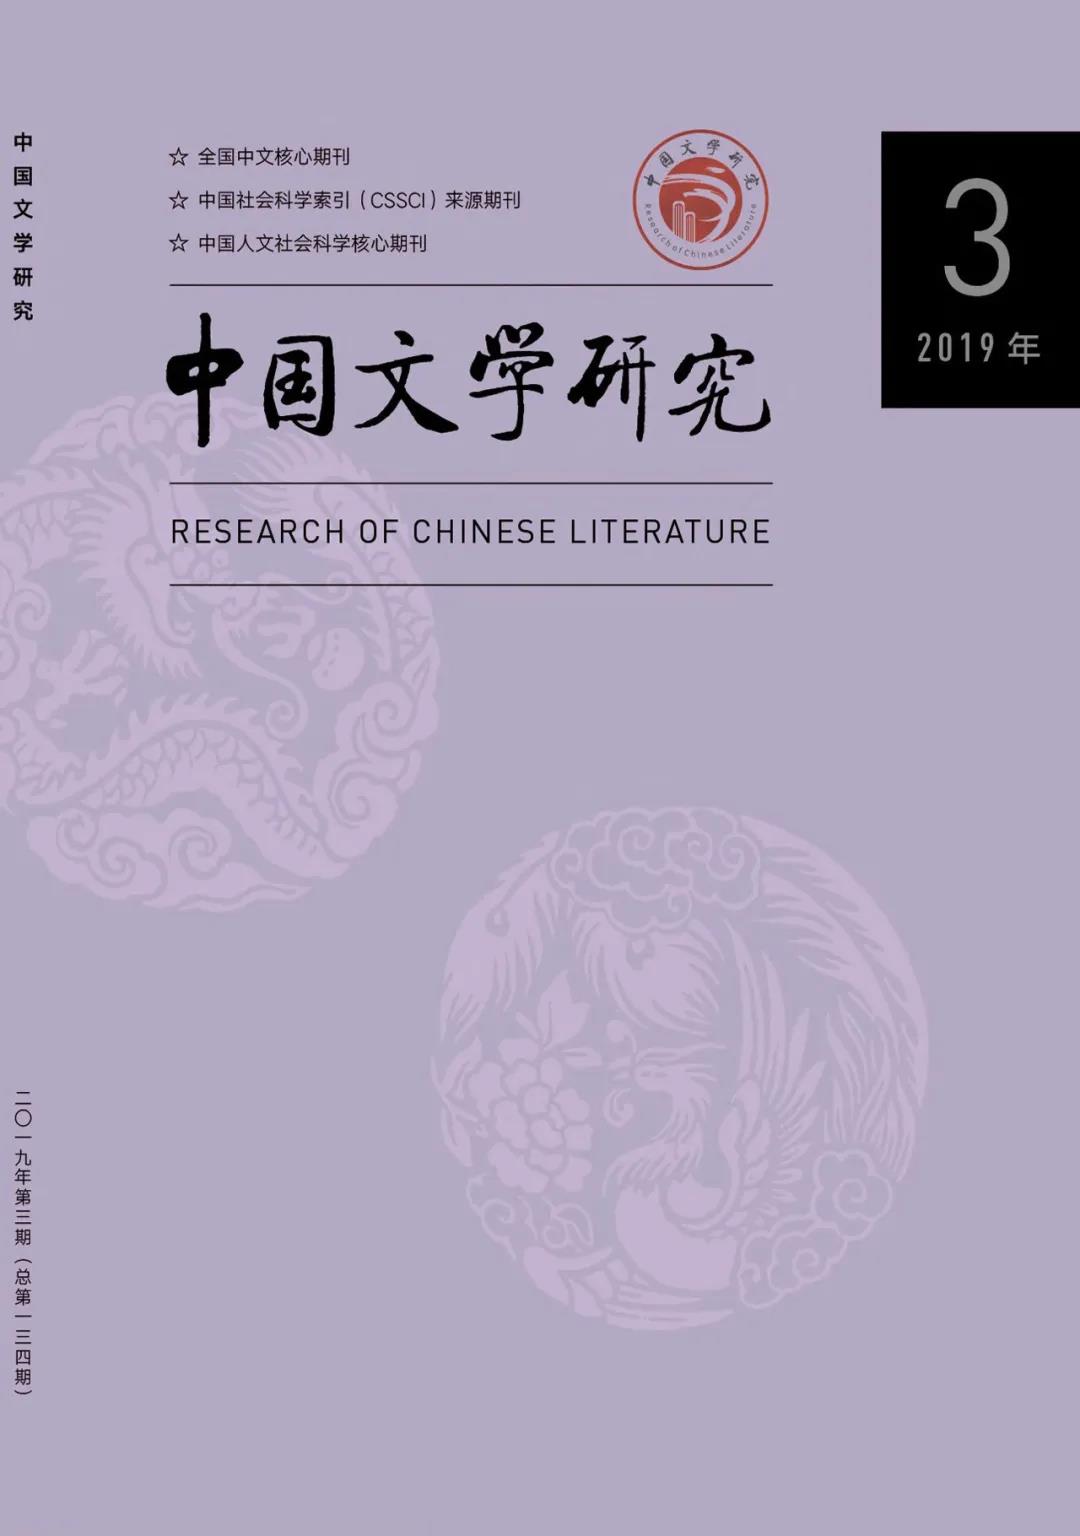 《中国文学研究》2019年第3期 道教文学研究专题